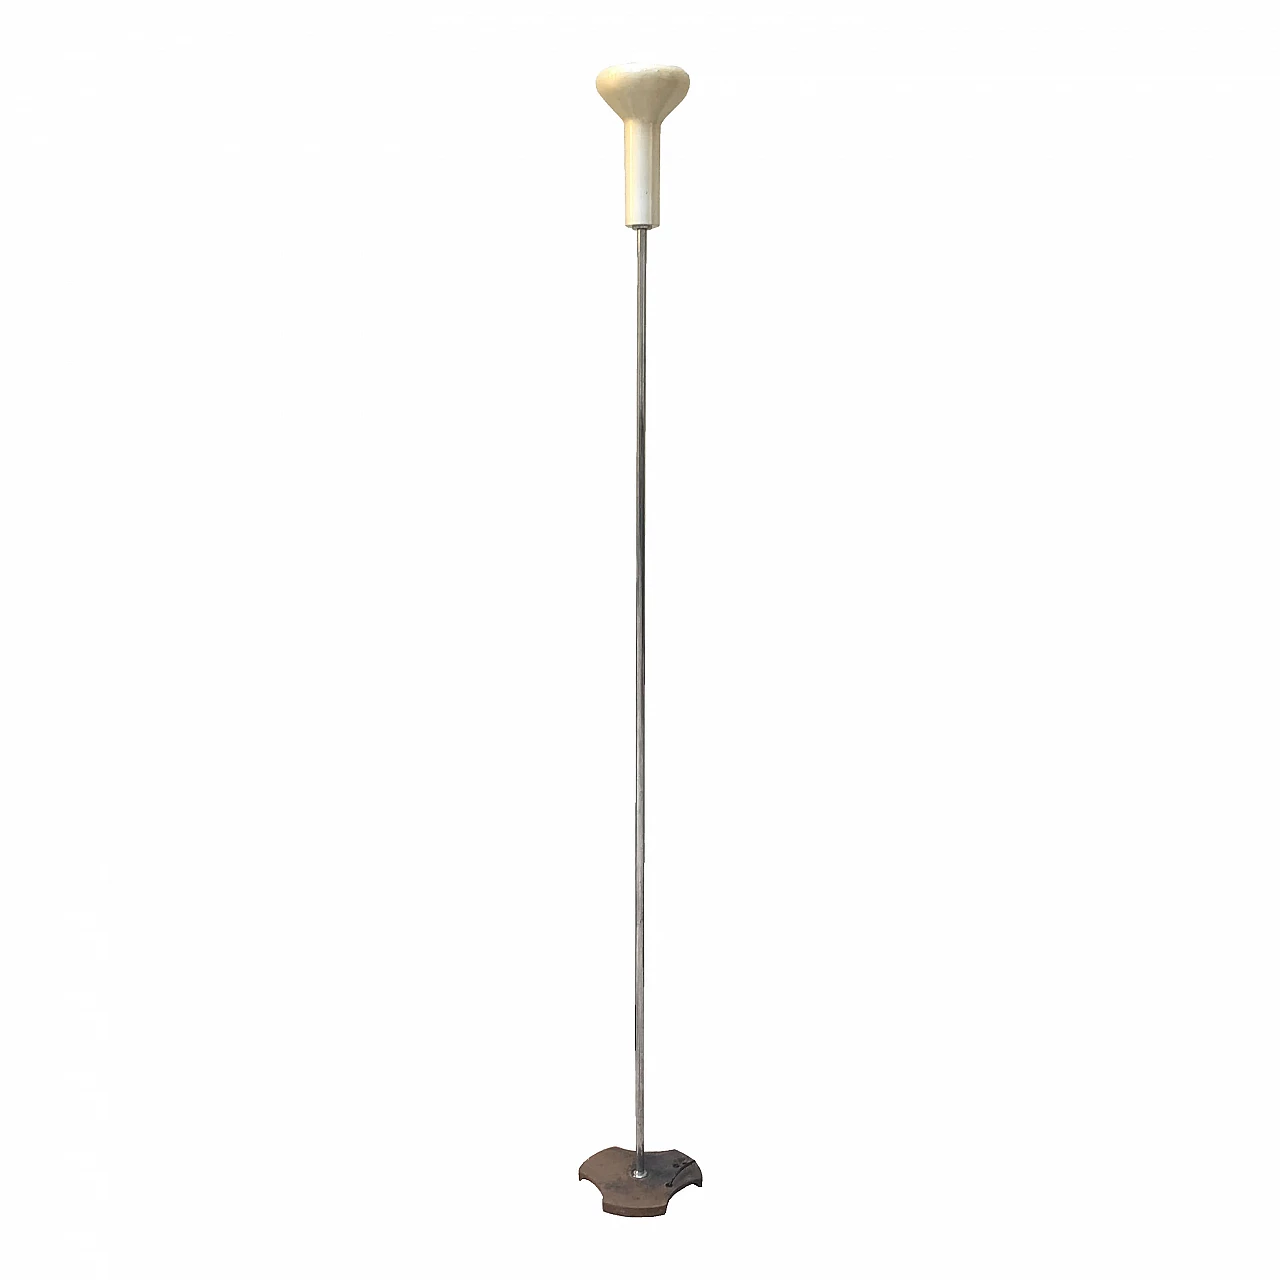 Gino Sarfatti Floor Lamp Model 1073 by Arteluce - Italy, 1950s 1071384